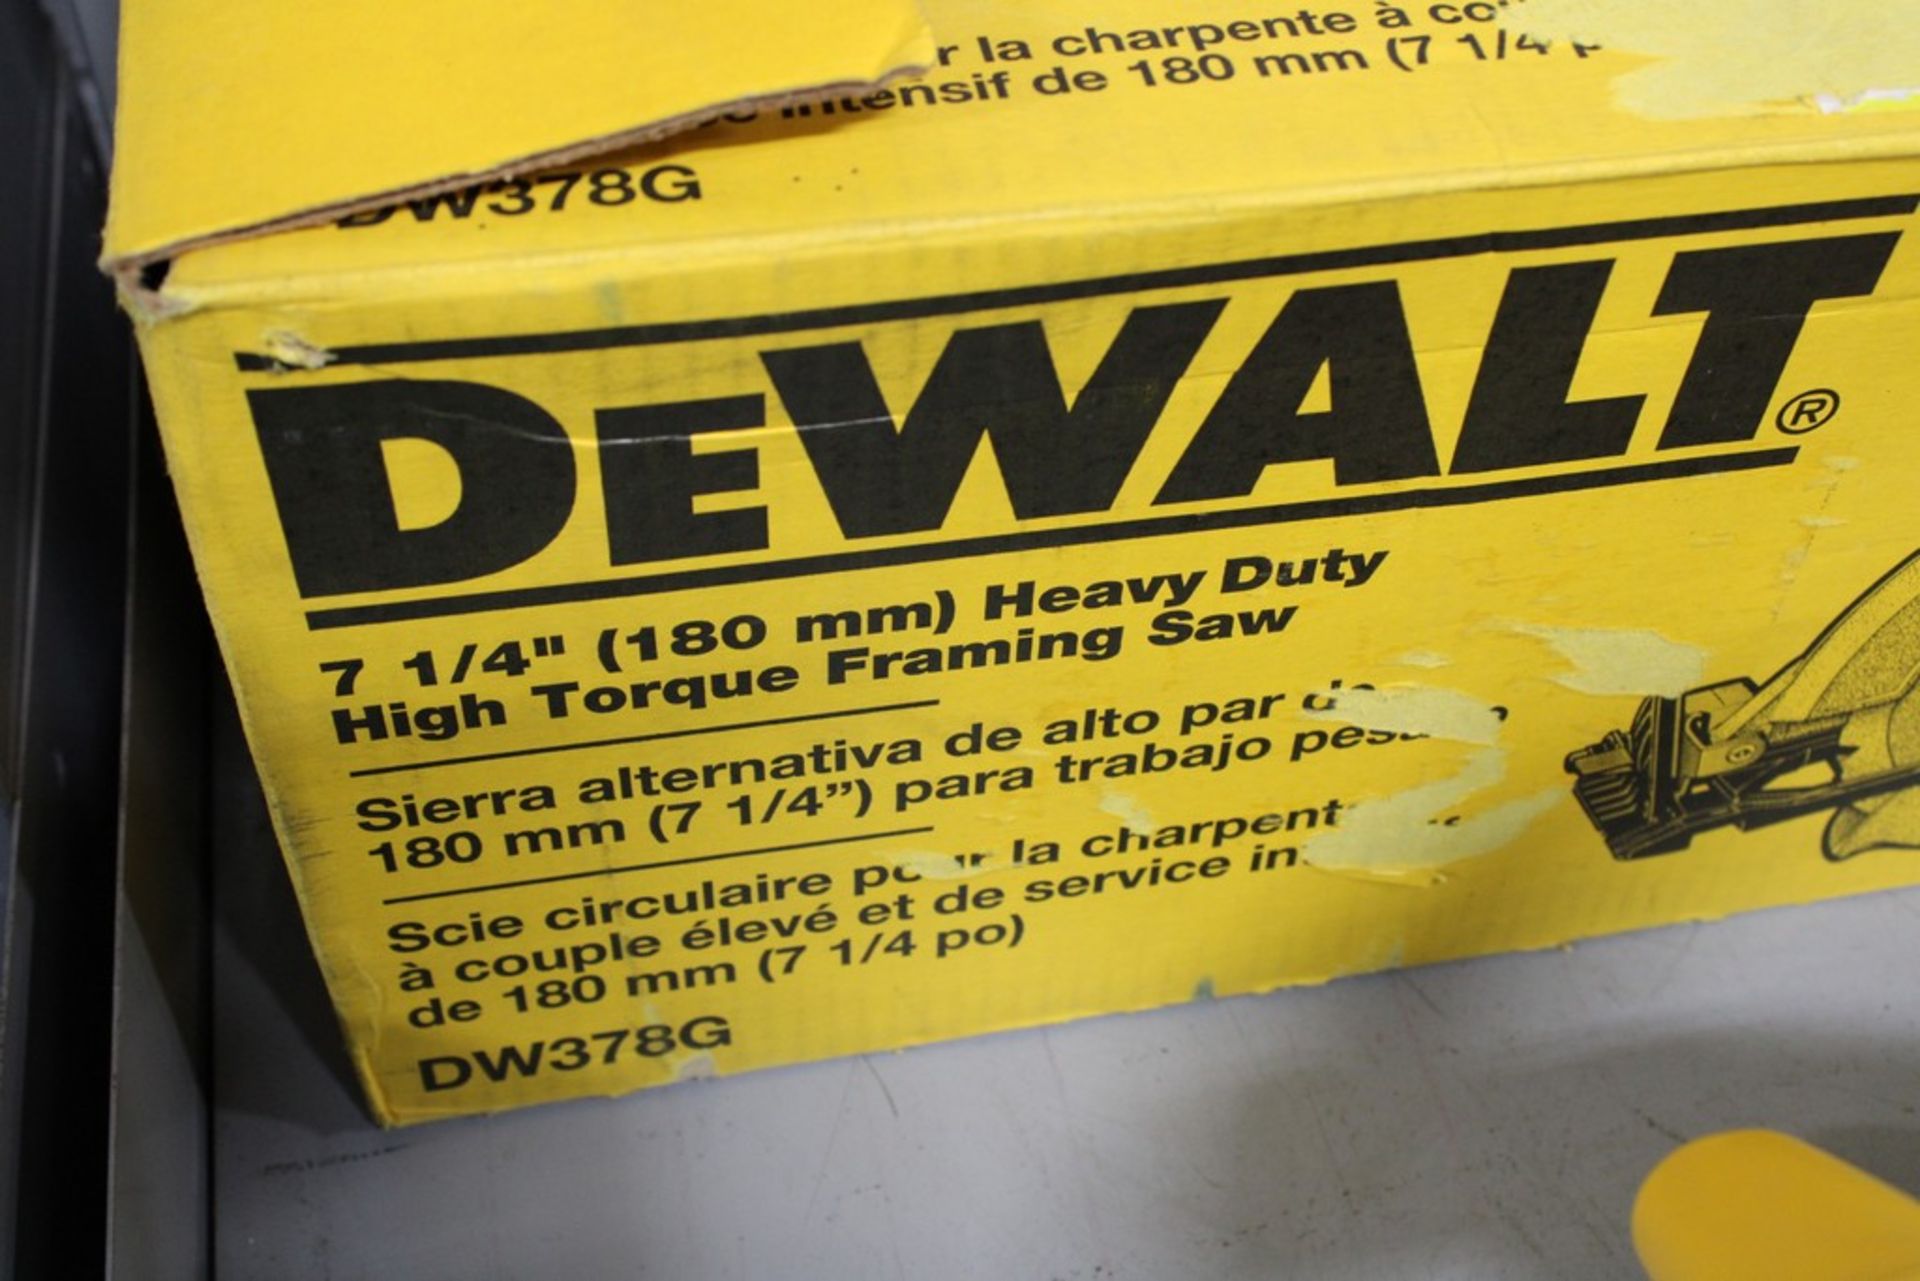 DEWALT MODEL DW378G 7-1/4" HEAVY DUTY HIGH TORQUE FRAMING SAW - Image 3 of 3